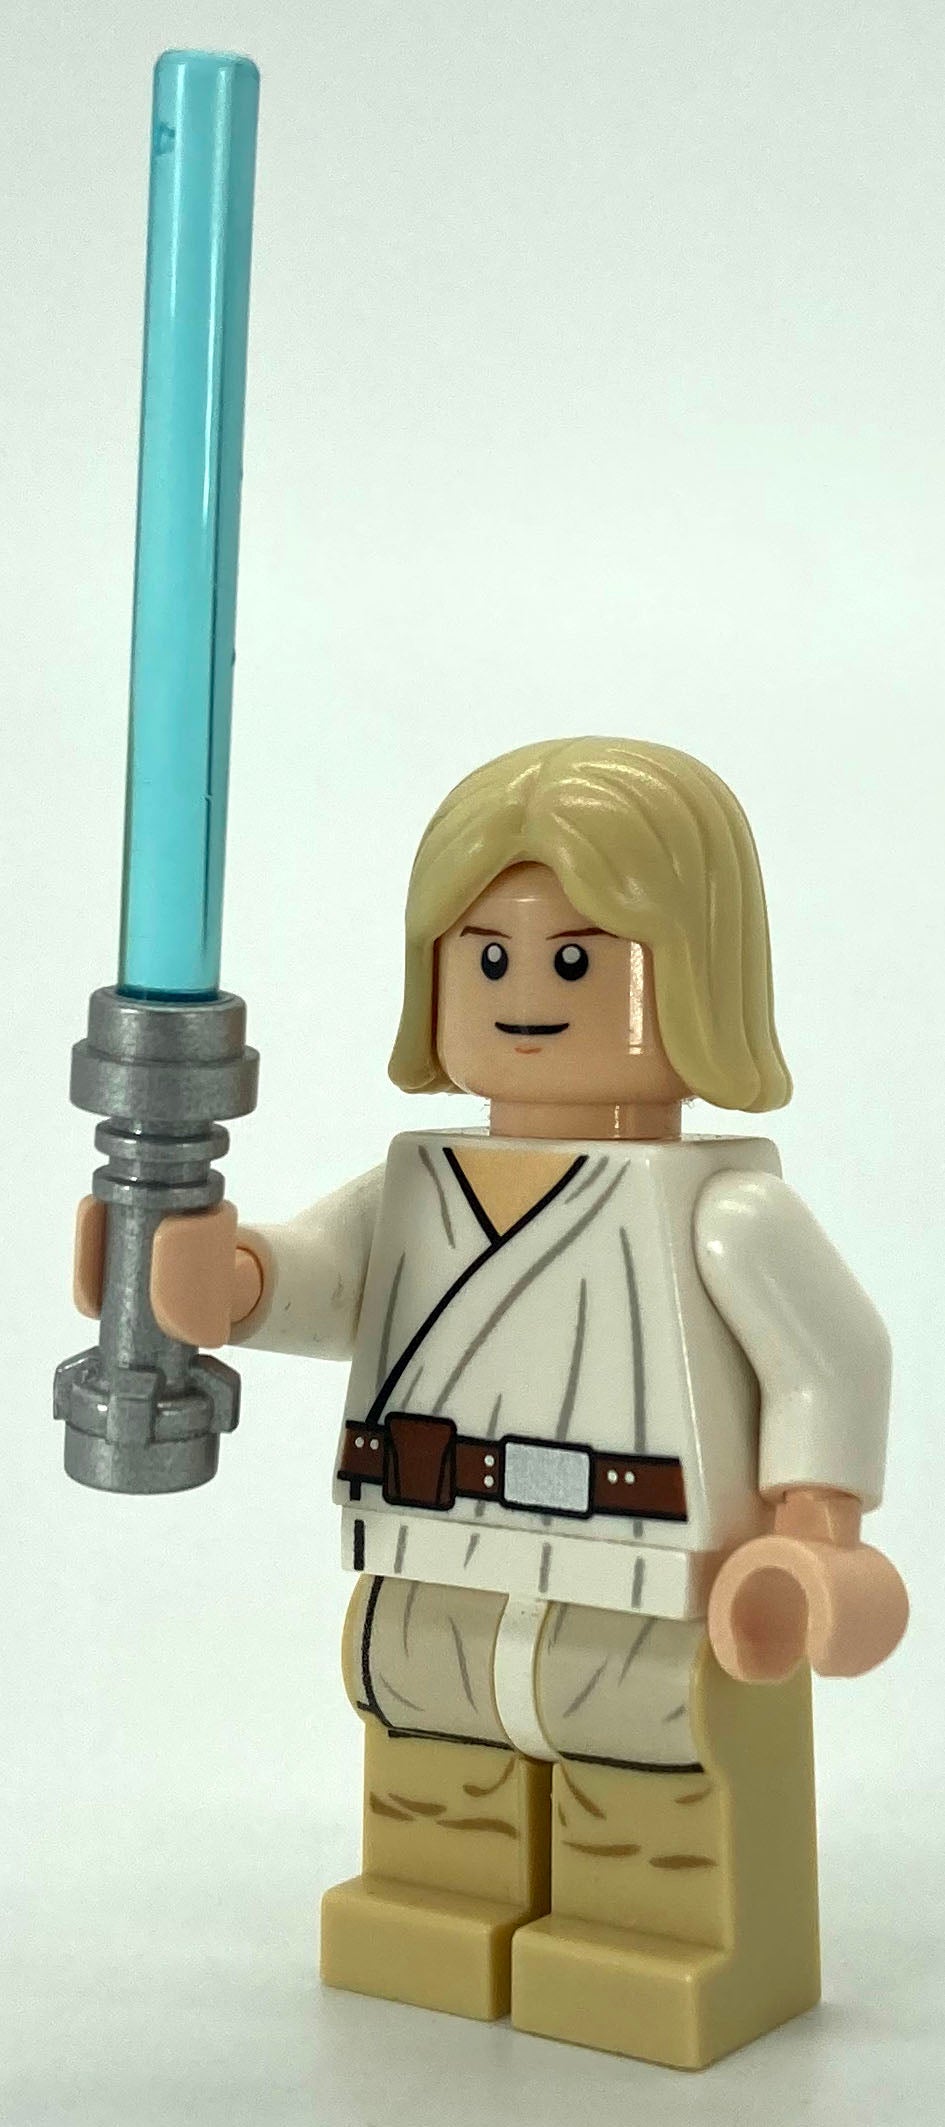 Luke Skywalker - Light Nougat, Long Hair, White Tunic, Tan Legs, White Glints